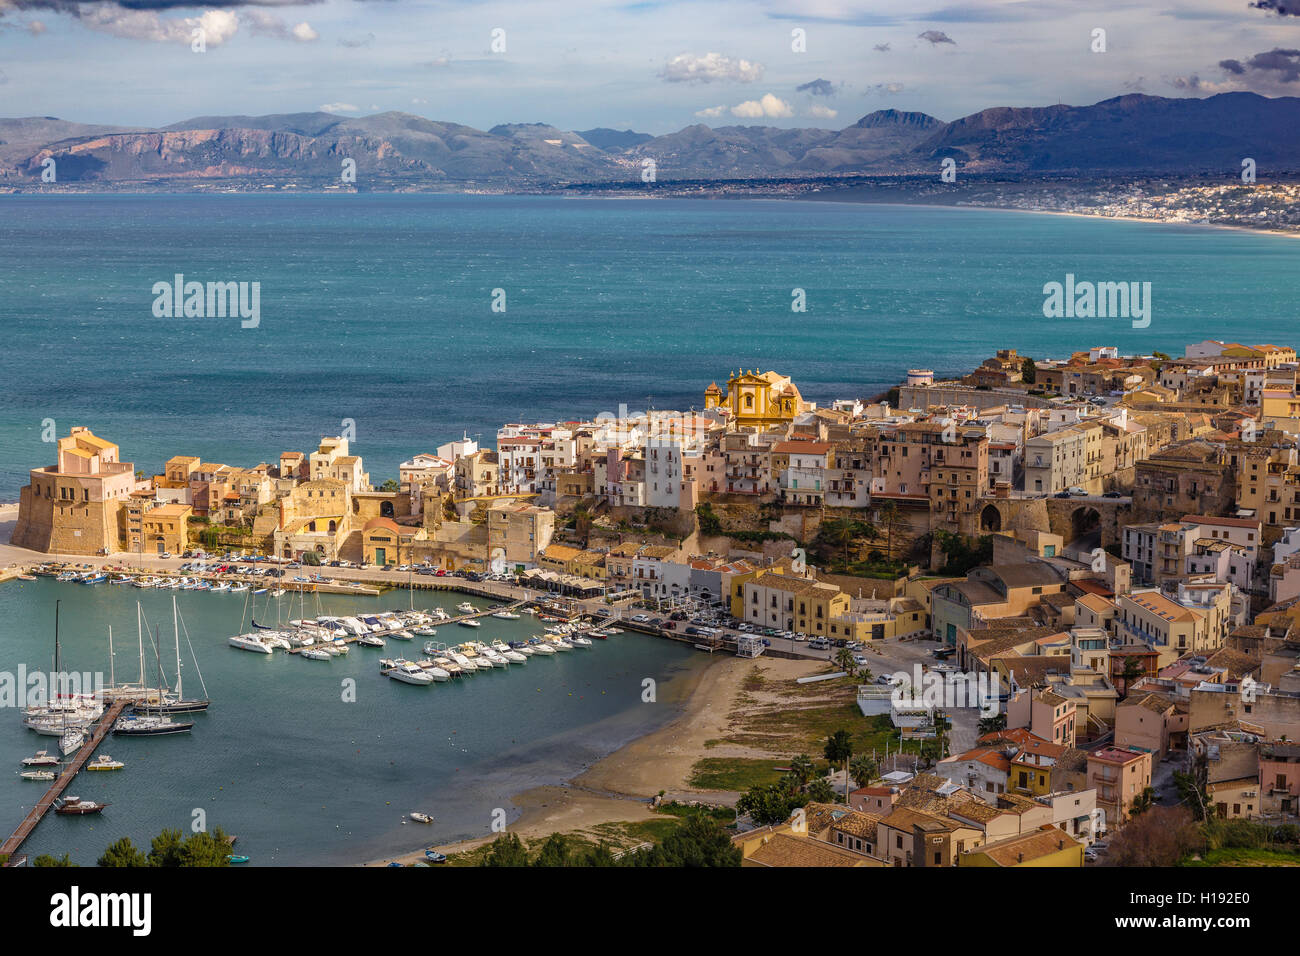 Sicily, Italy Stock Photo